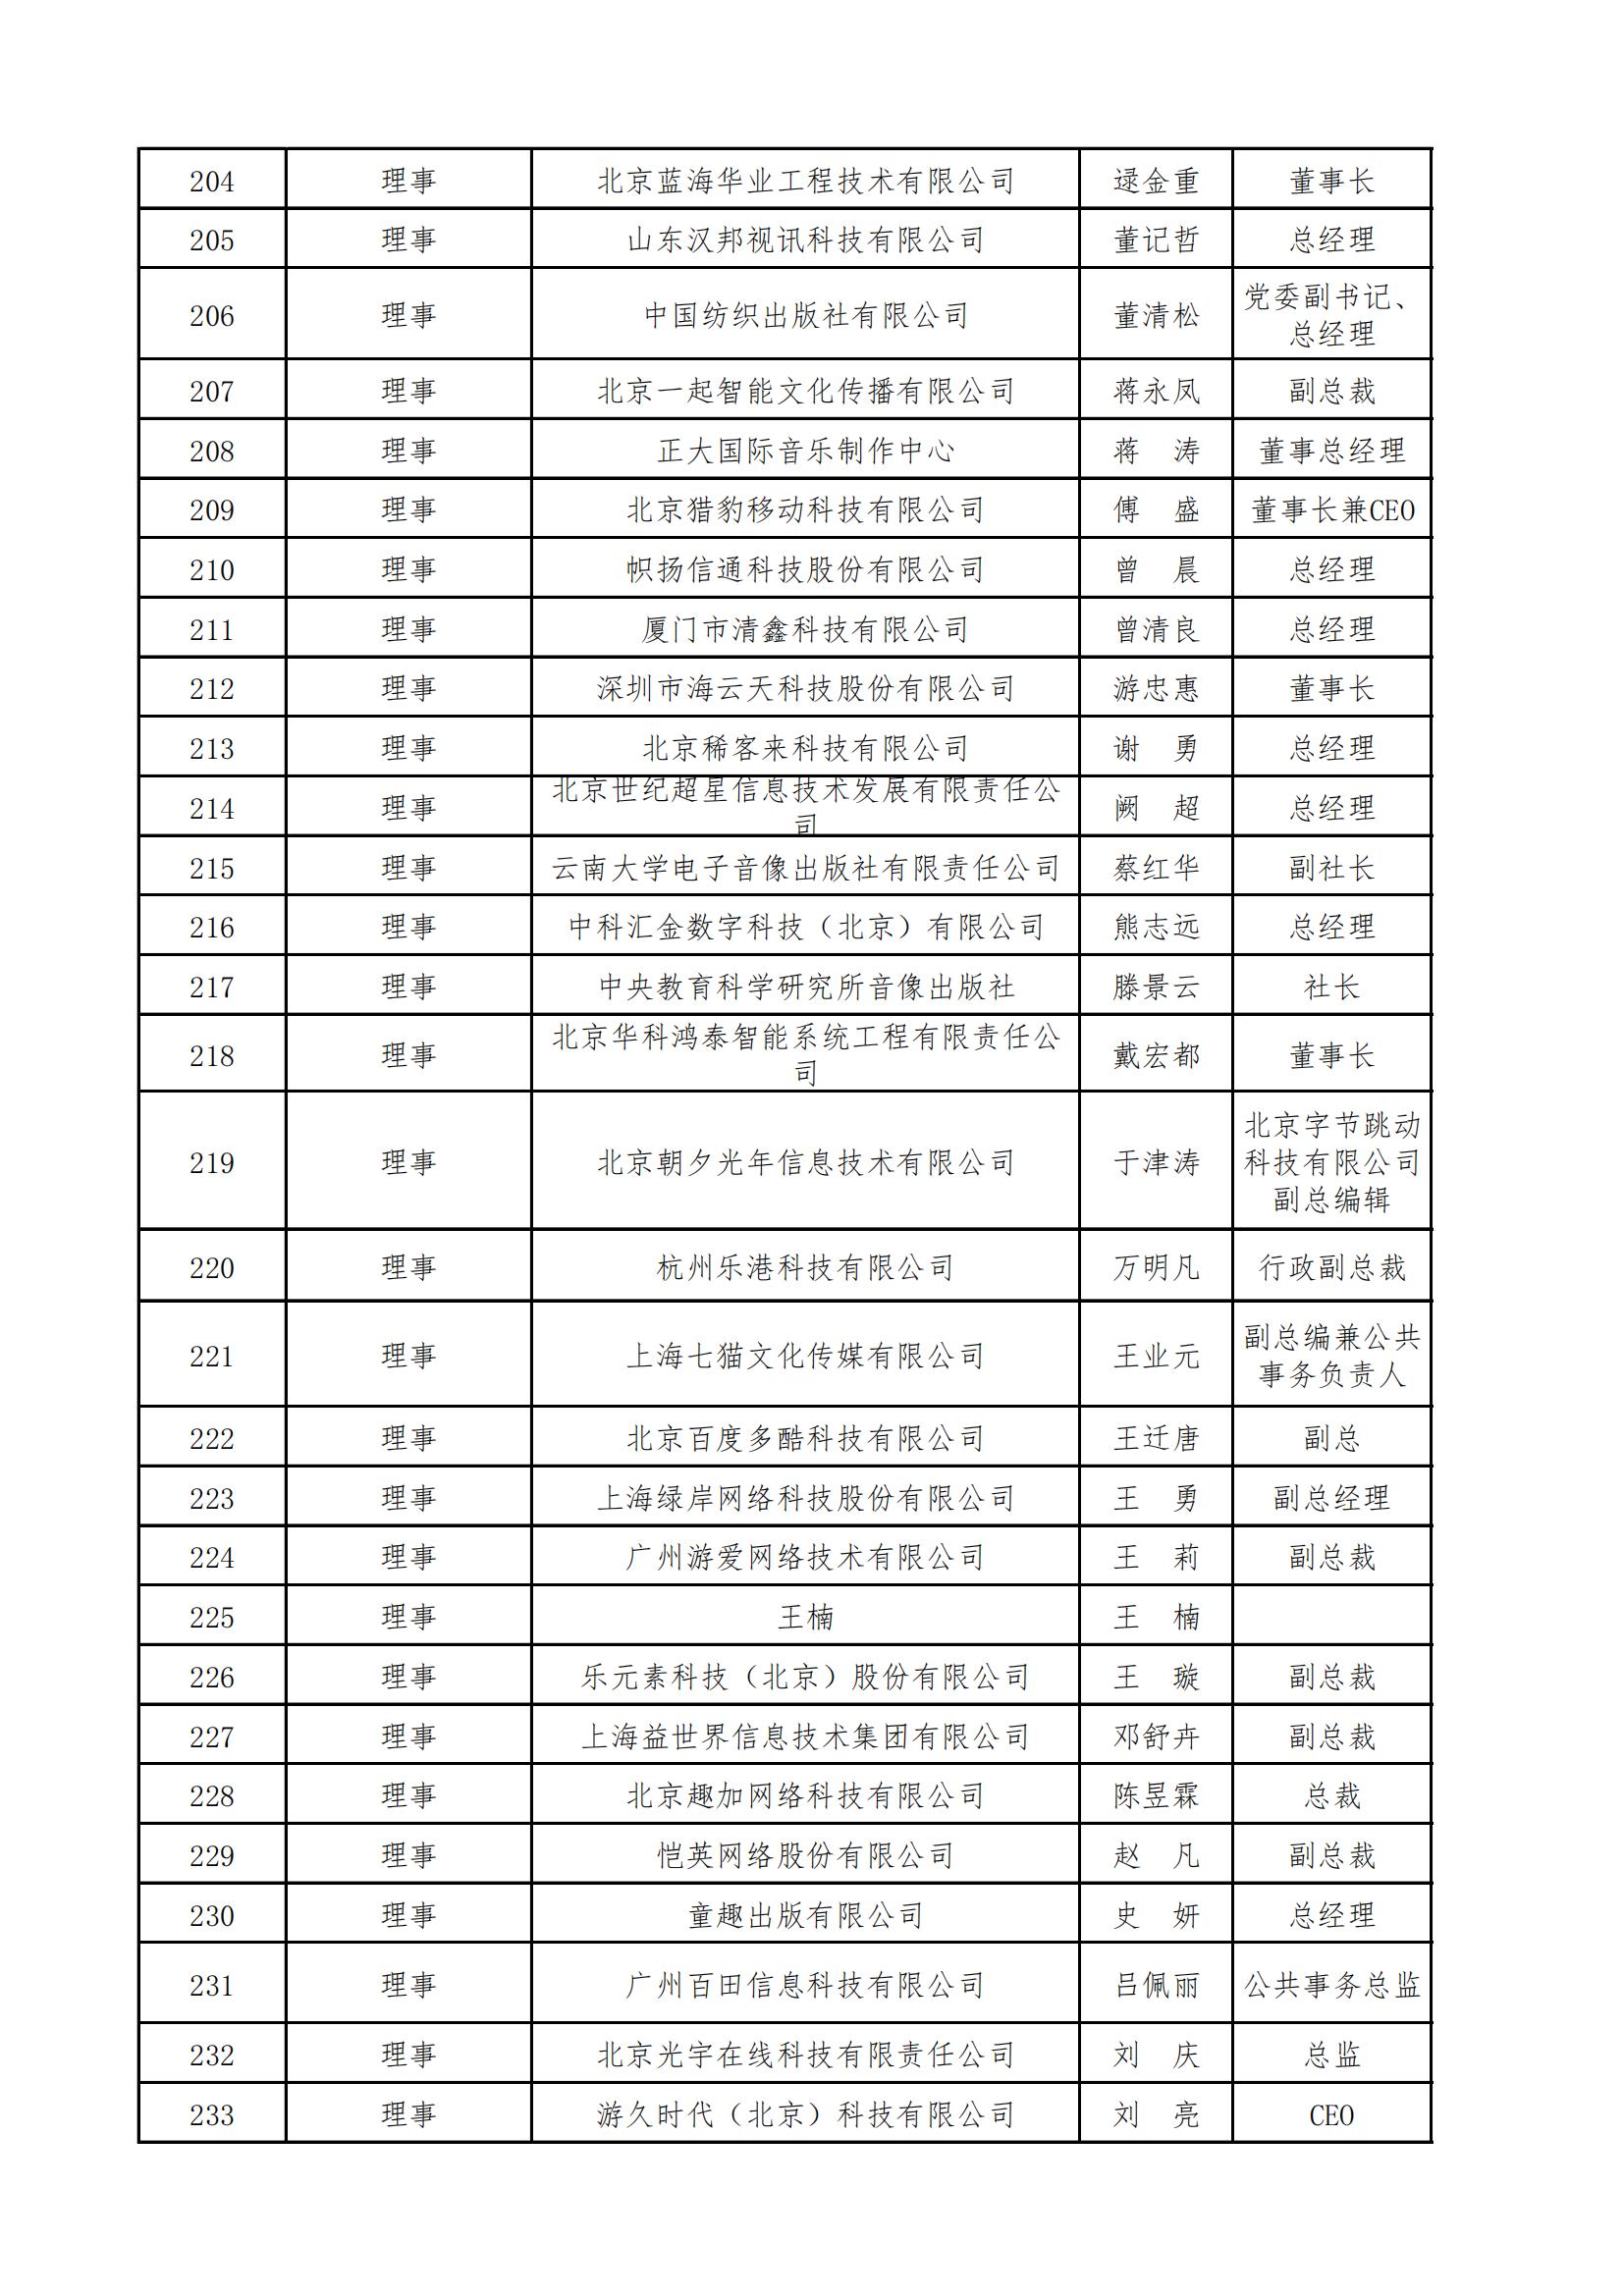 中國音像與數字出版協會第五屆理事會名錄_07.jpg